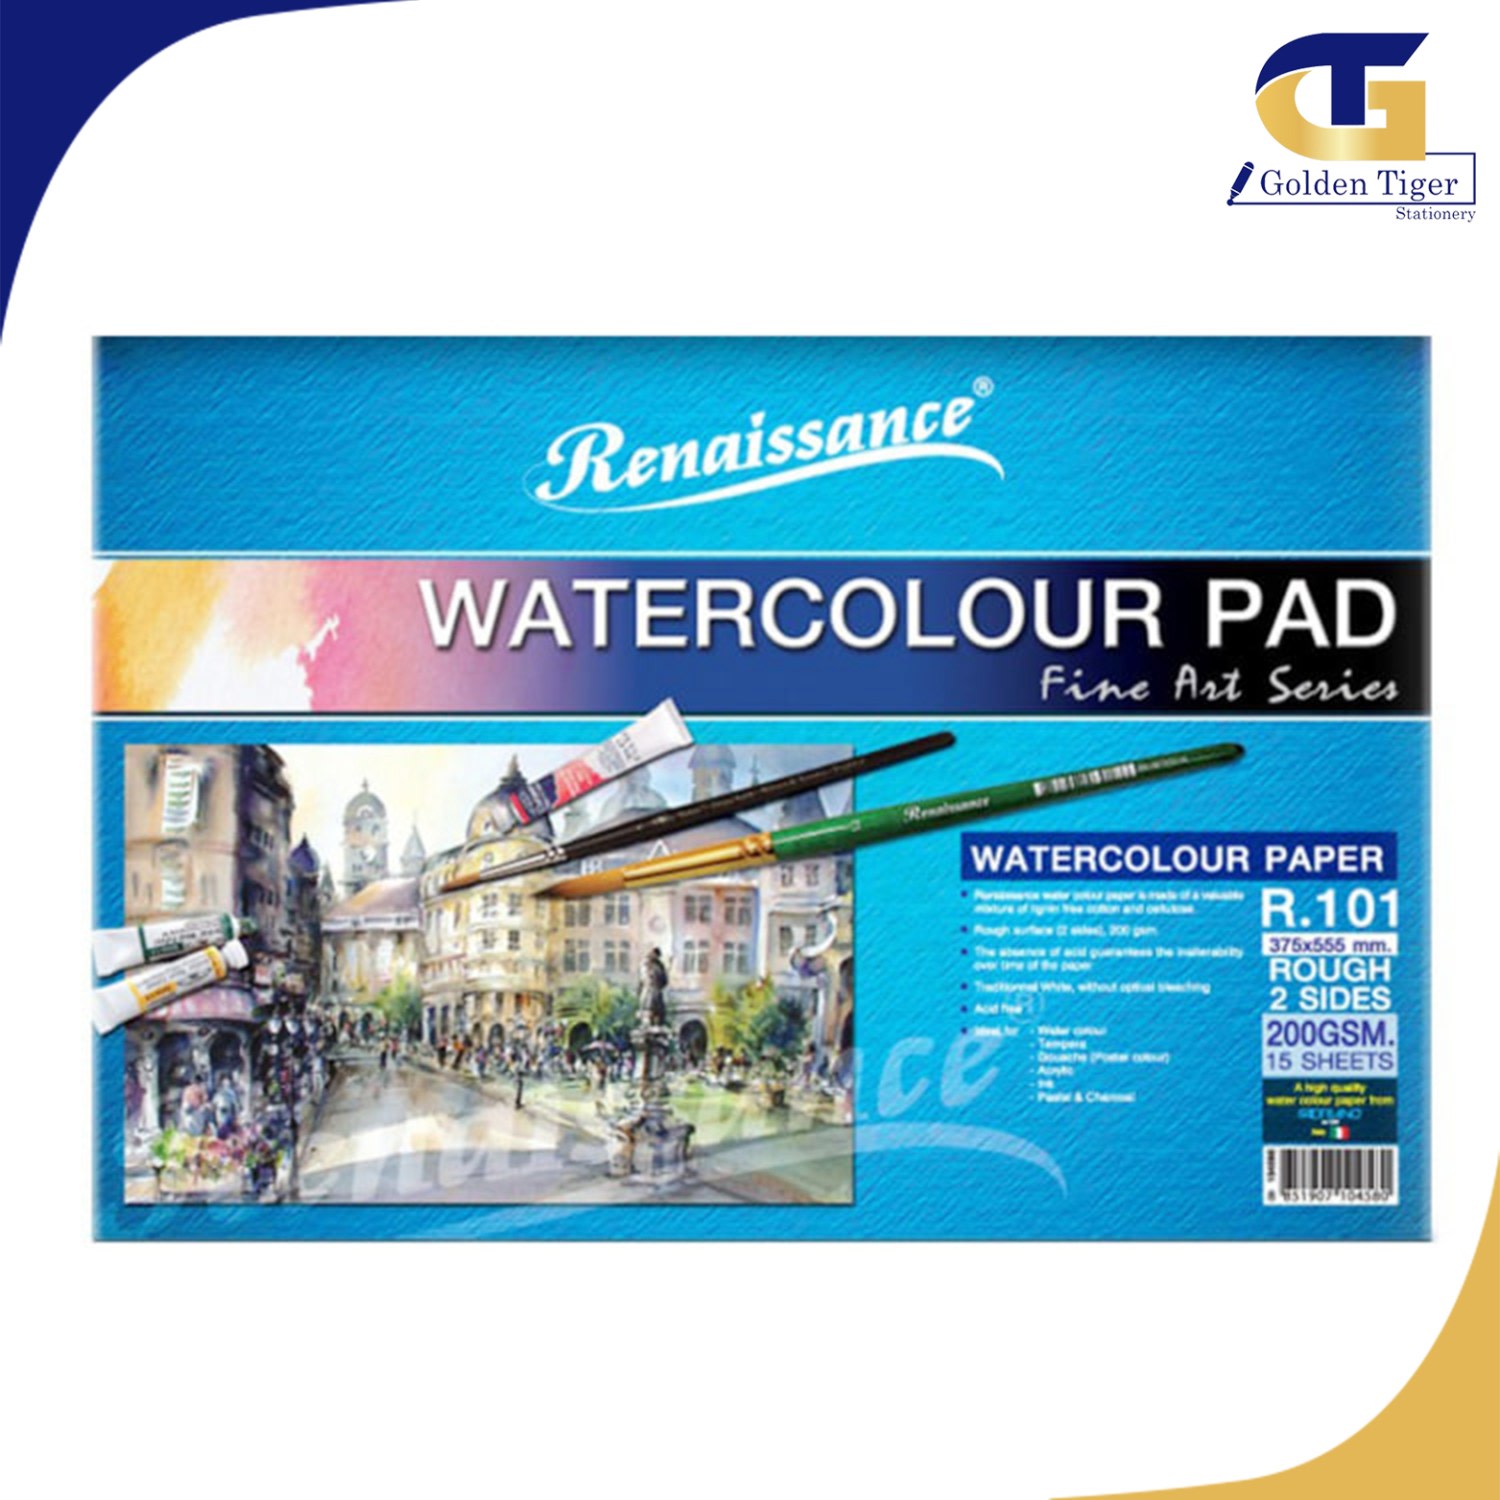 Renaissance Water Color Pad R601 (size 375x555mm) 300g